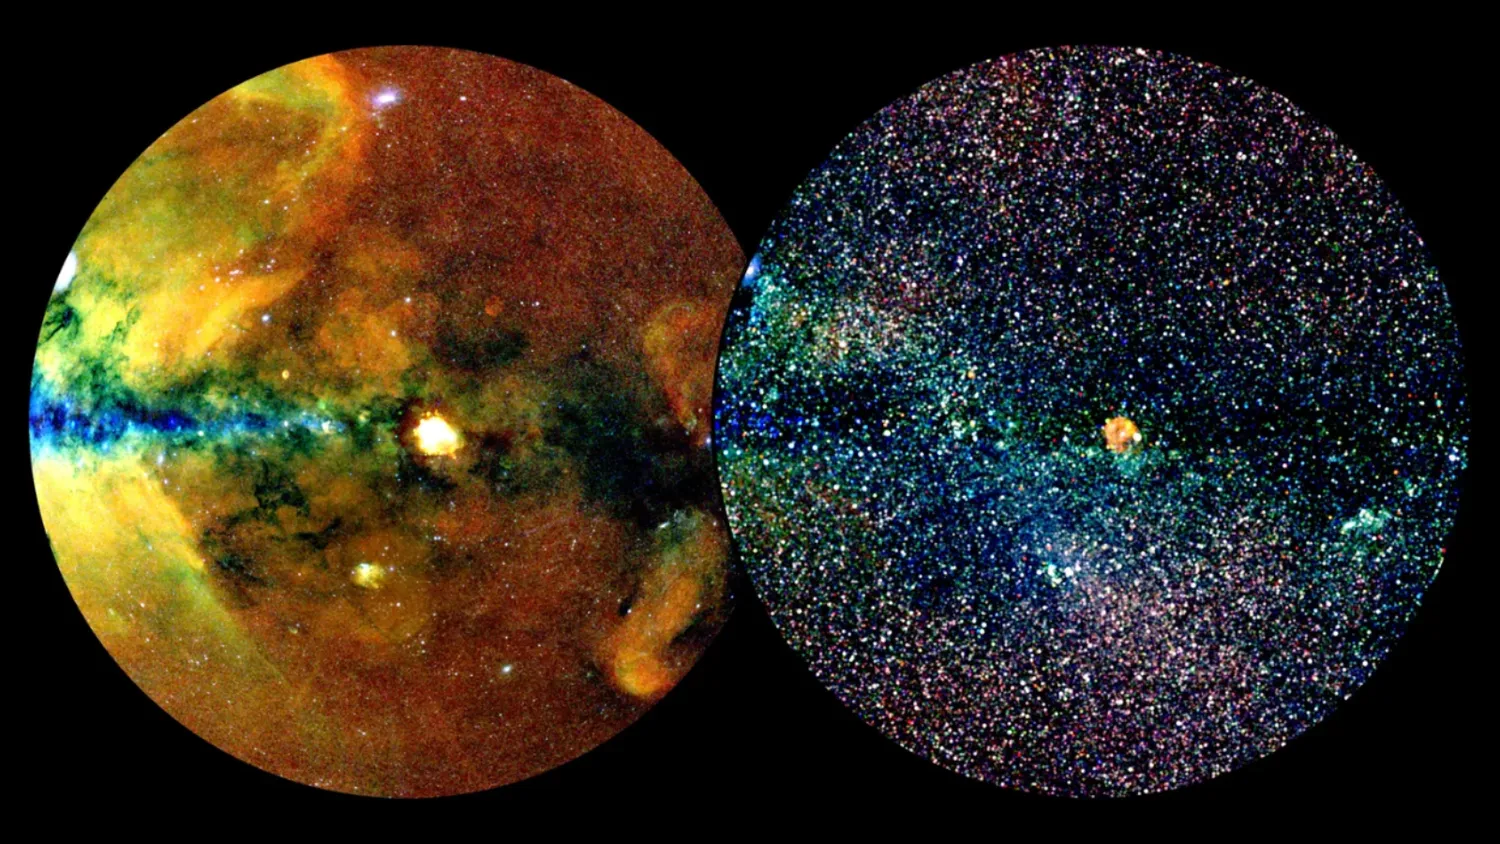 Read more about the article Röntgenbild des Universums zeigt fast 1 Million hochenergetische Objekte: „Das sind unglaubliche Zahlen“.